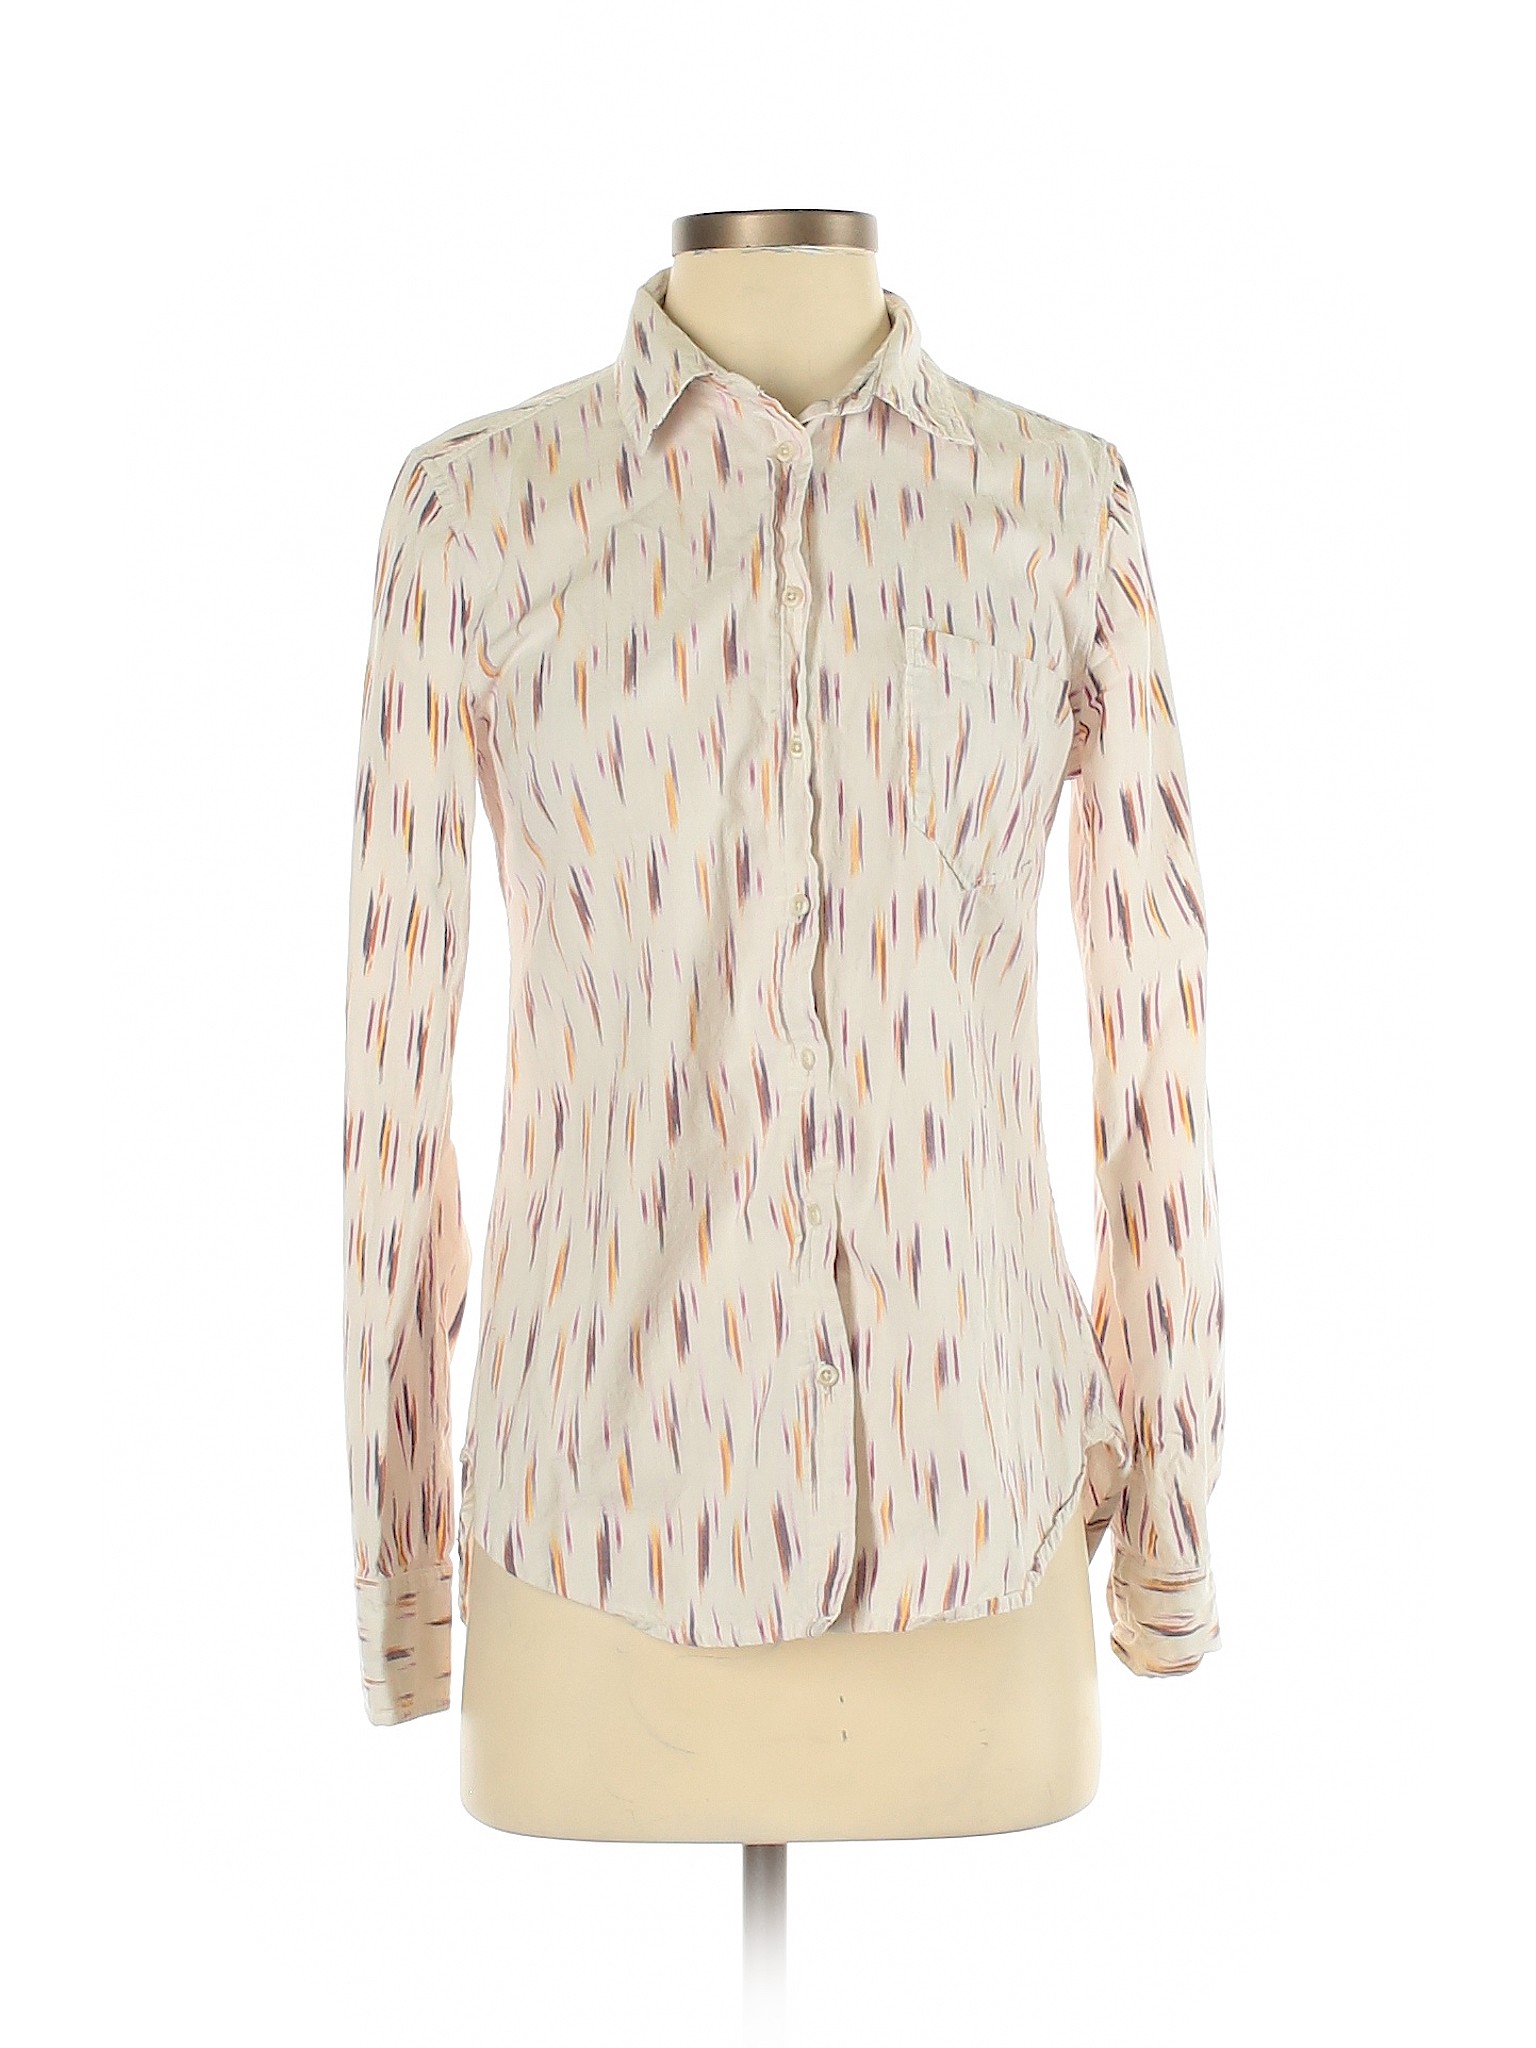 Merona Women White Long Sleeve Button-Down Shirt S | eBay